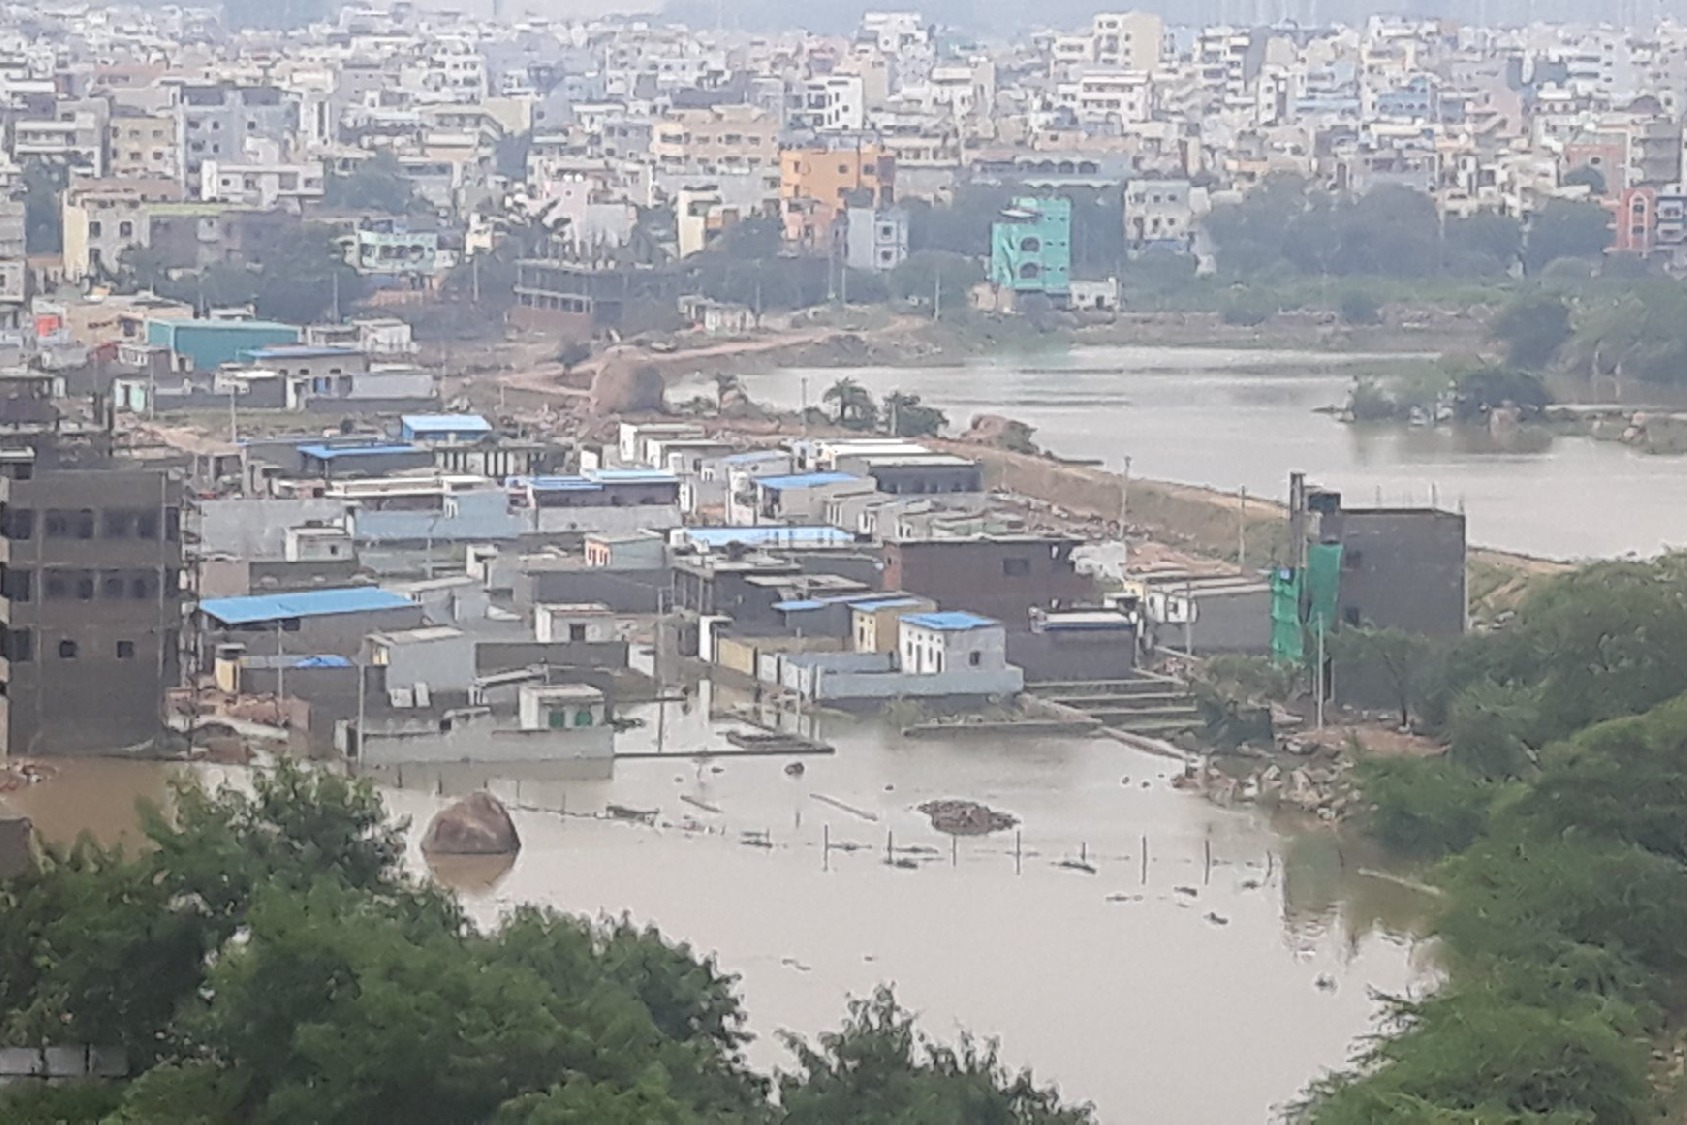 Hetero Drugs announces ten crore rupees for flood relief in Hyderabad